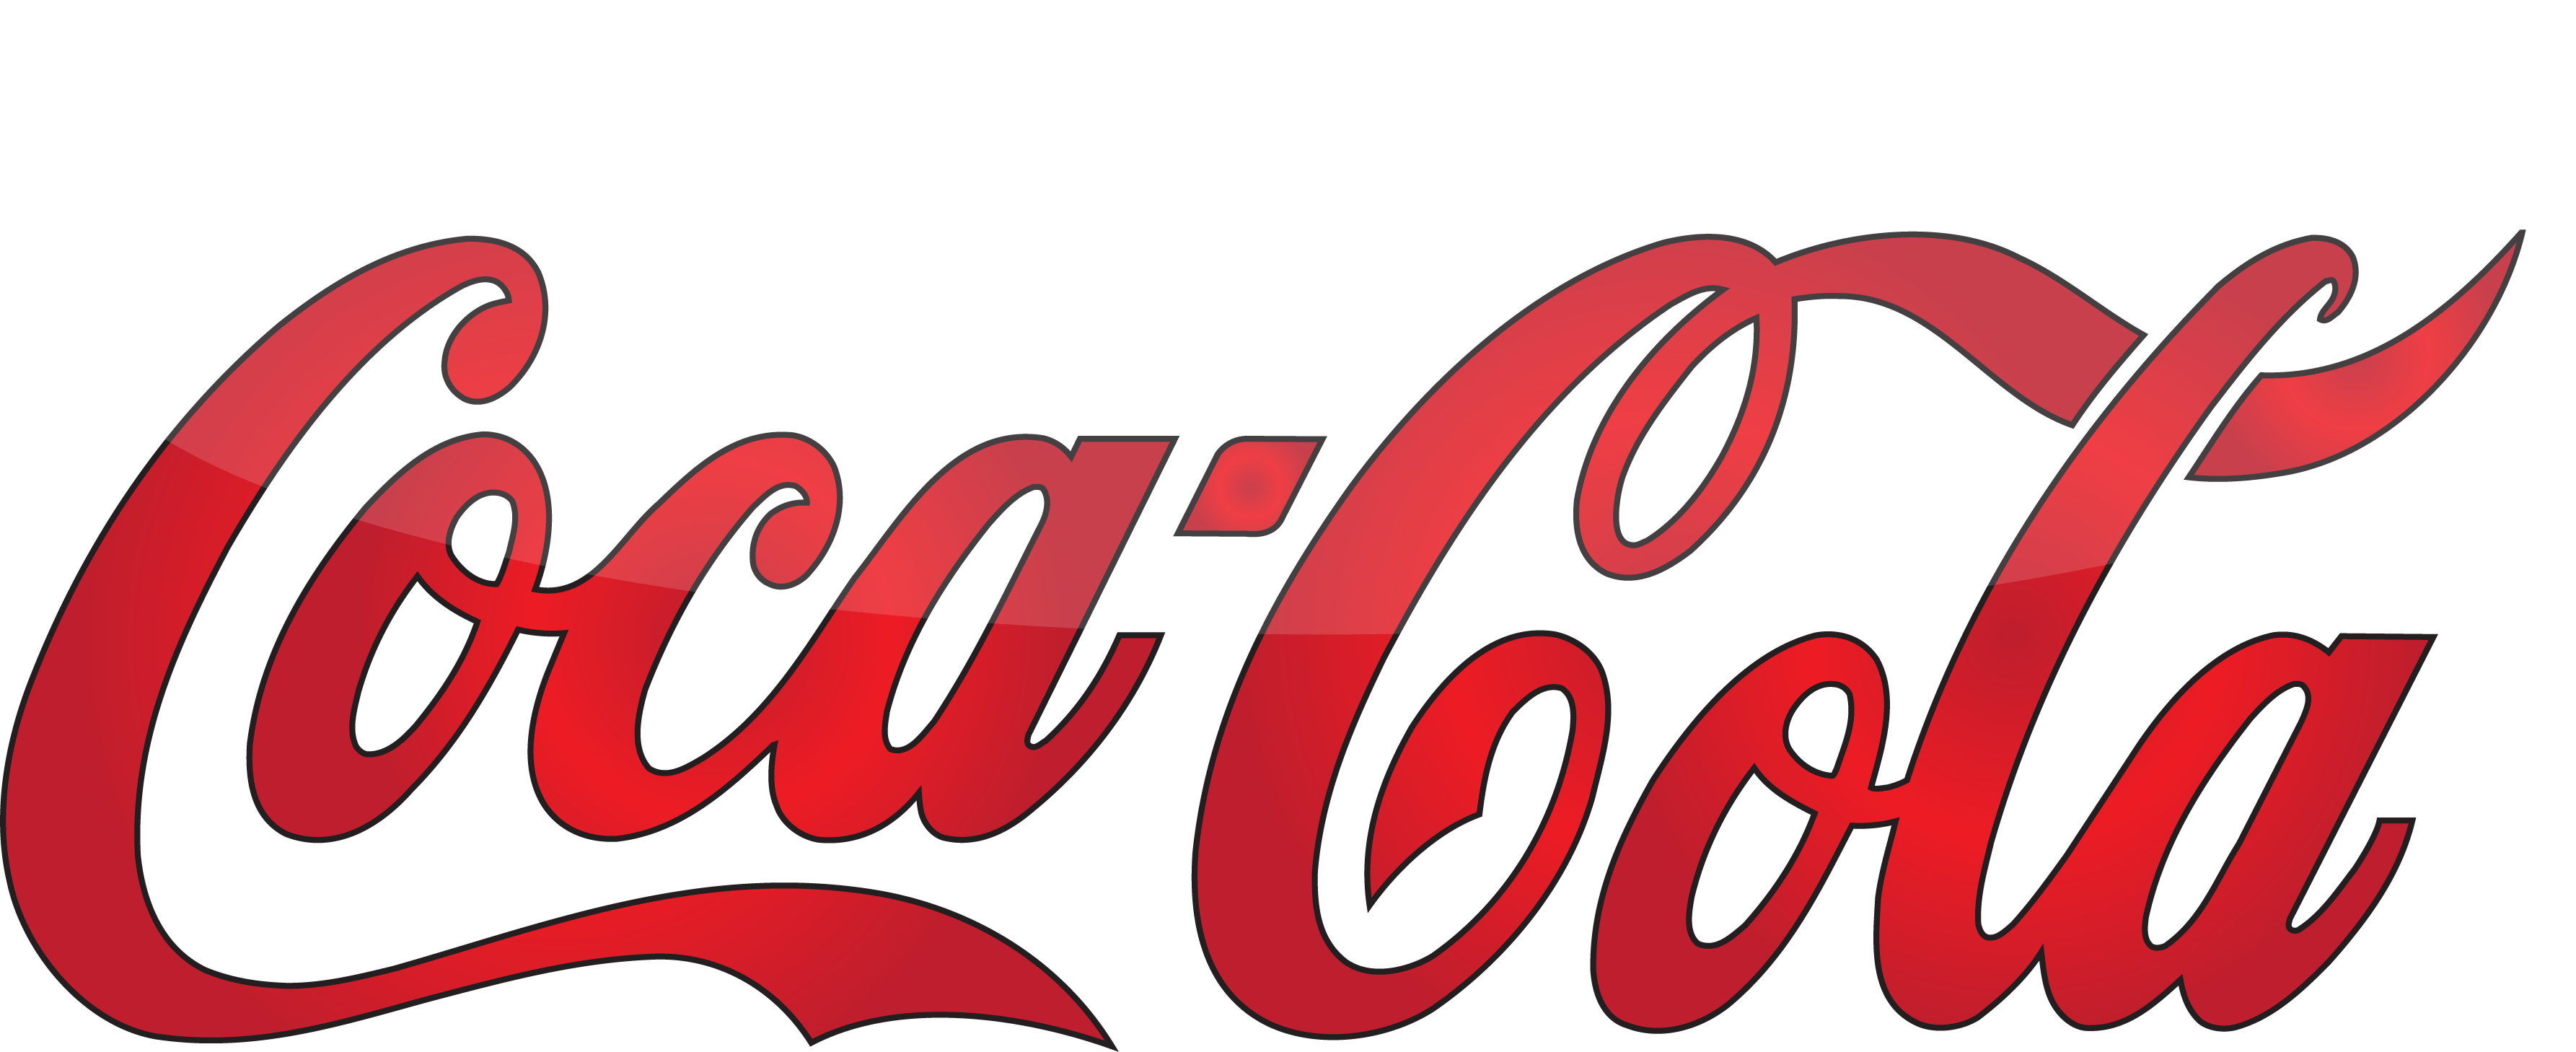 Coca Cola Foundation Logo, Hd